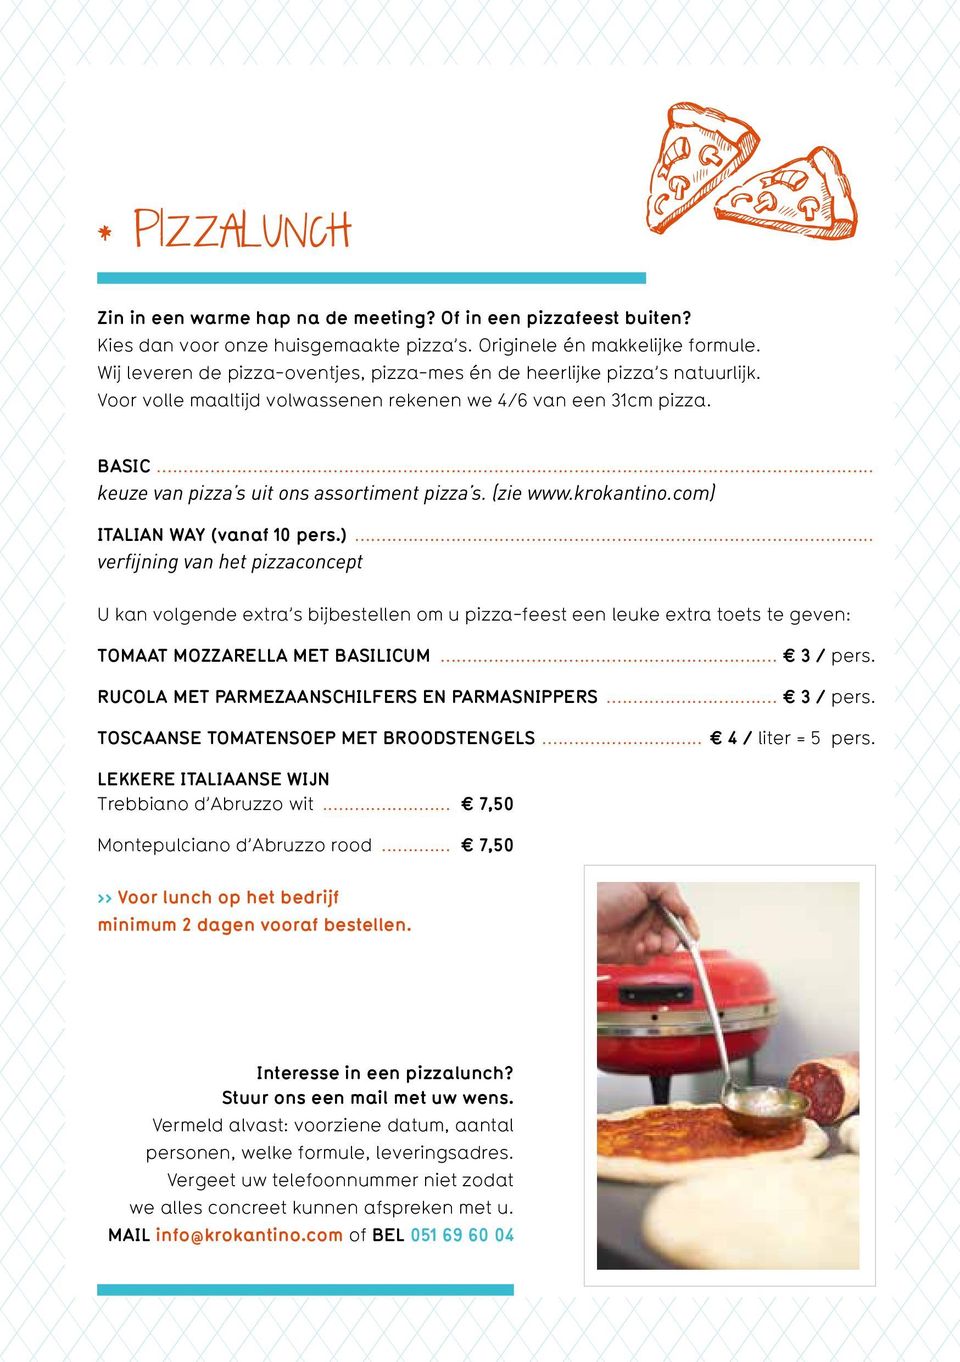 (zie www.krokantino.com) ITALIAN WAY (vanaf 10 pers.)... verfijning van het pizzaconcept U kan volgende extra s bijbestellen om u pizza-feest een leuke extra toets te geven: TOMAAT MOZZARELLA MET BASILICUM.